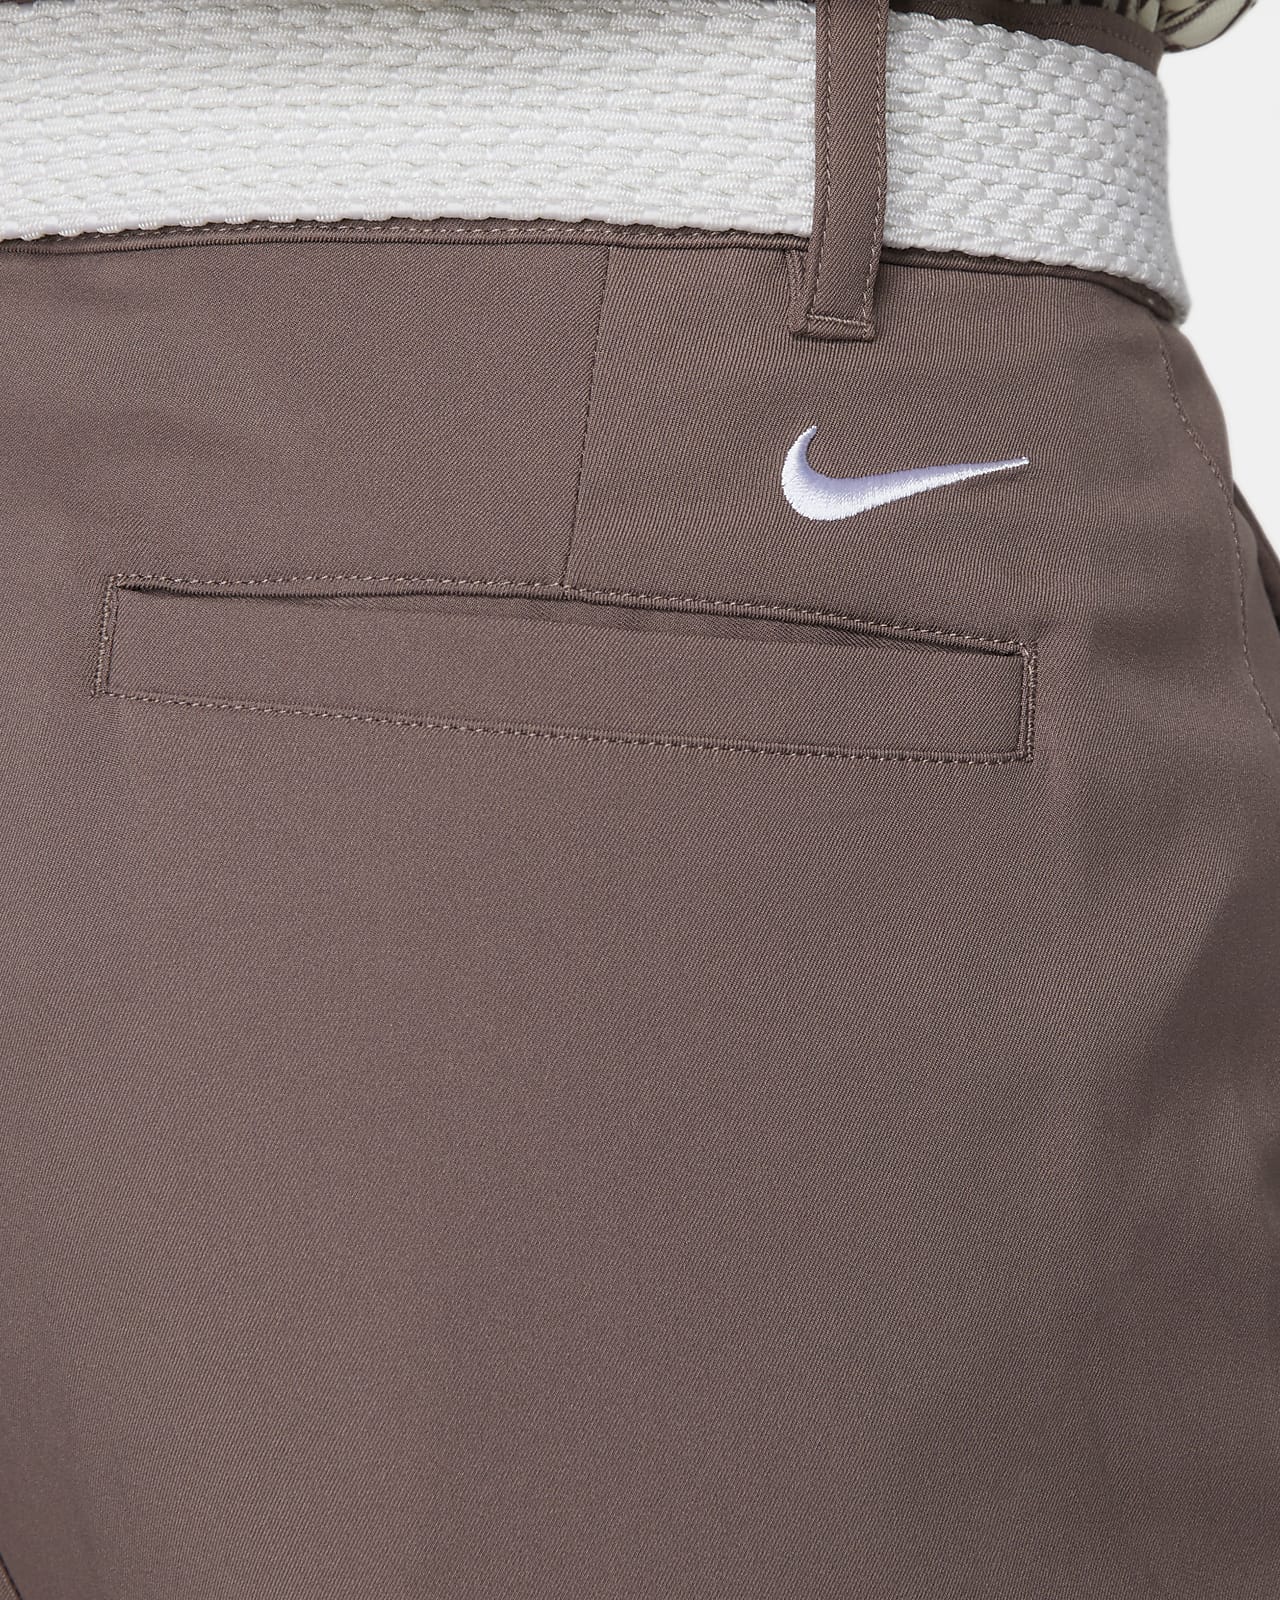 Nike Dri-FIT Men's Pants. Nike.com